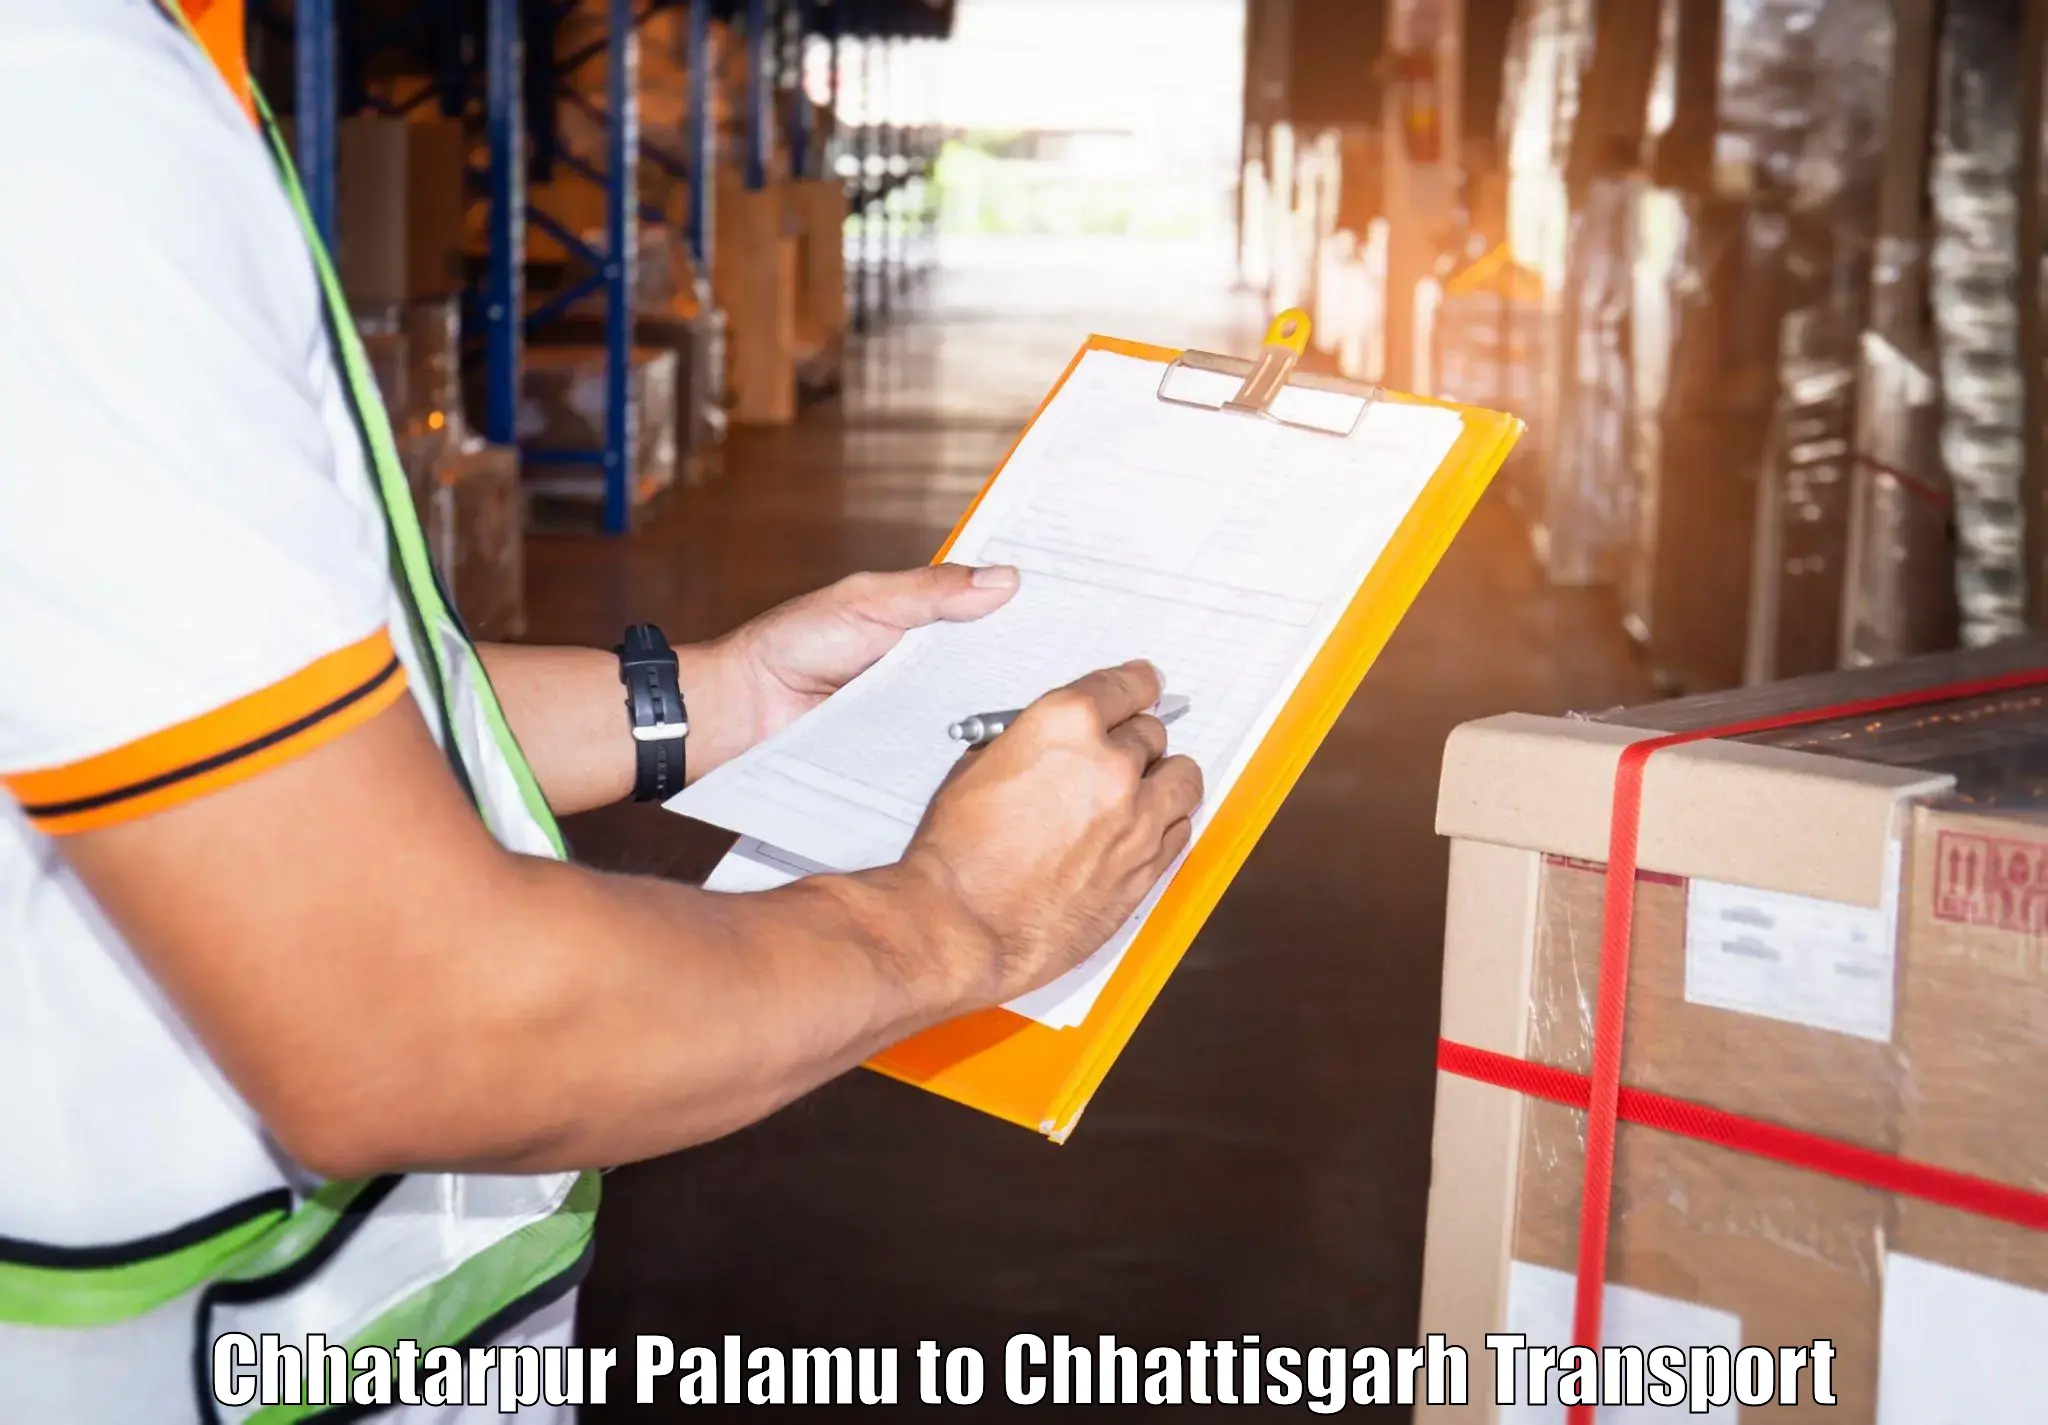 Container transport service Chhatarpur Palamu to Ramanujganj